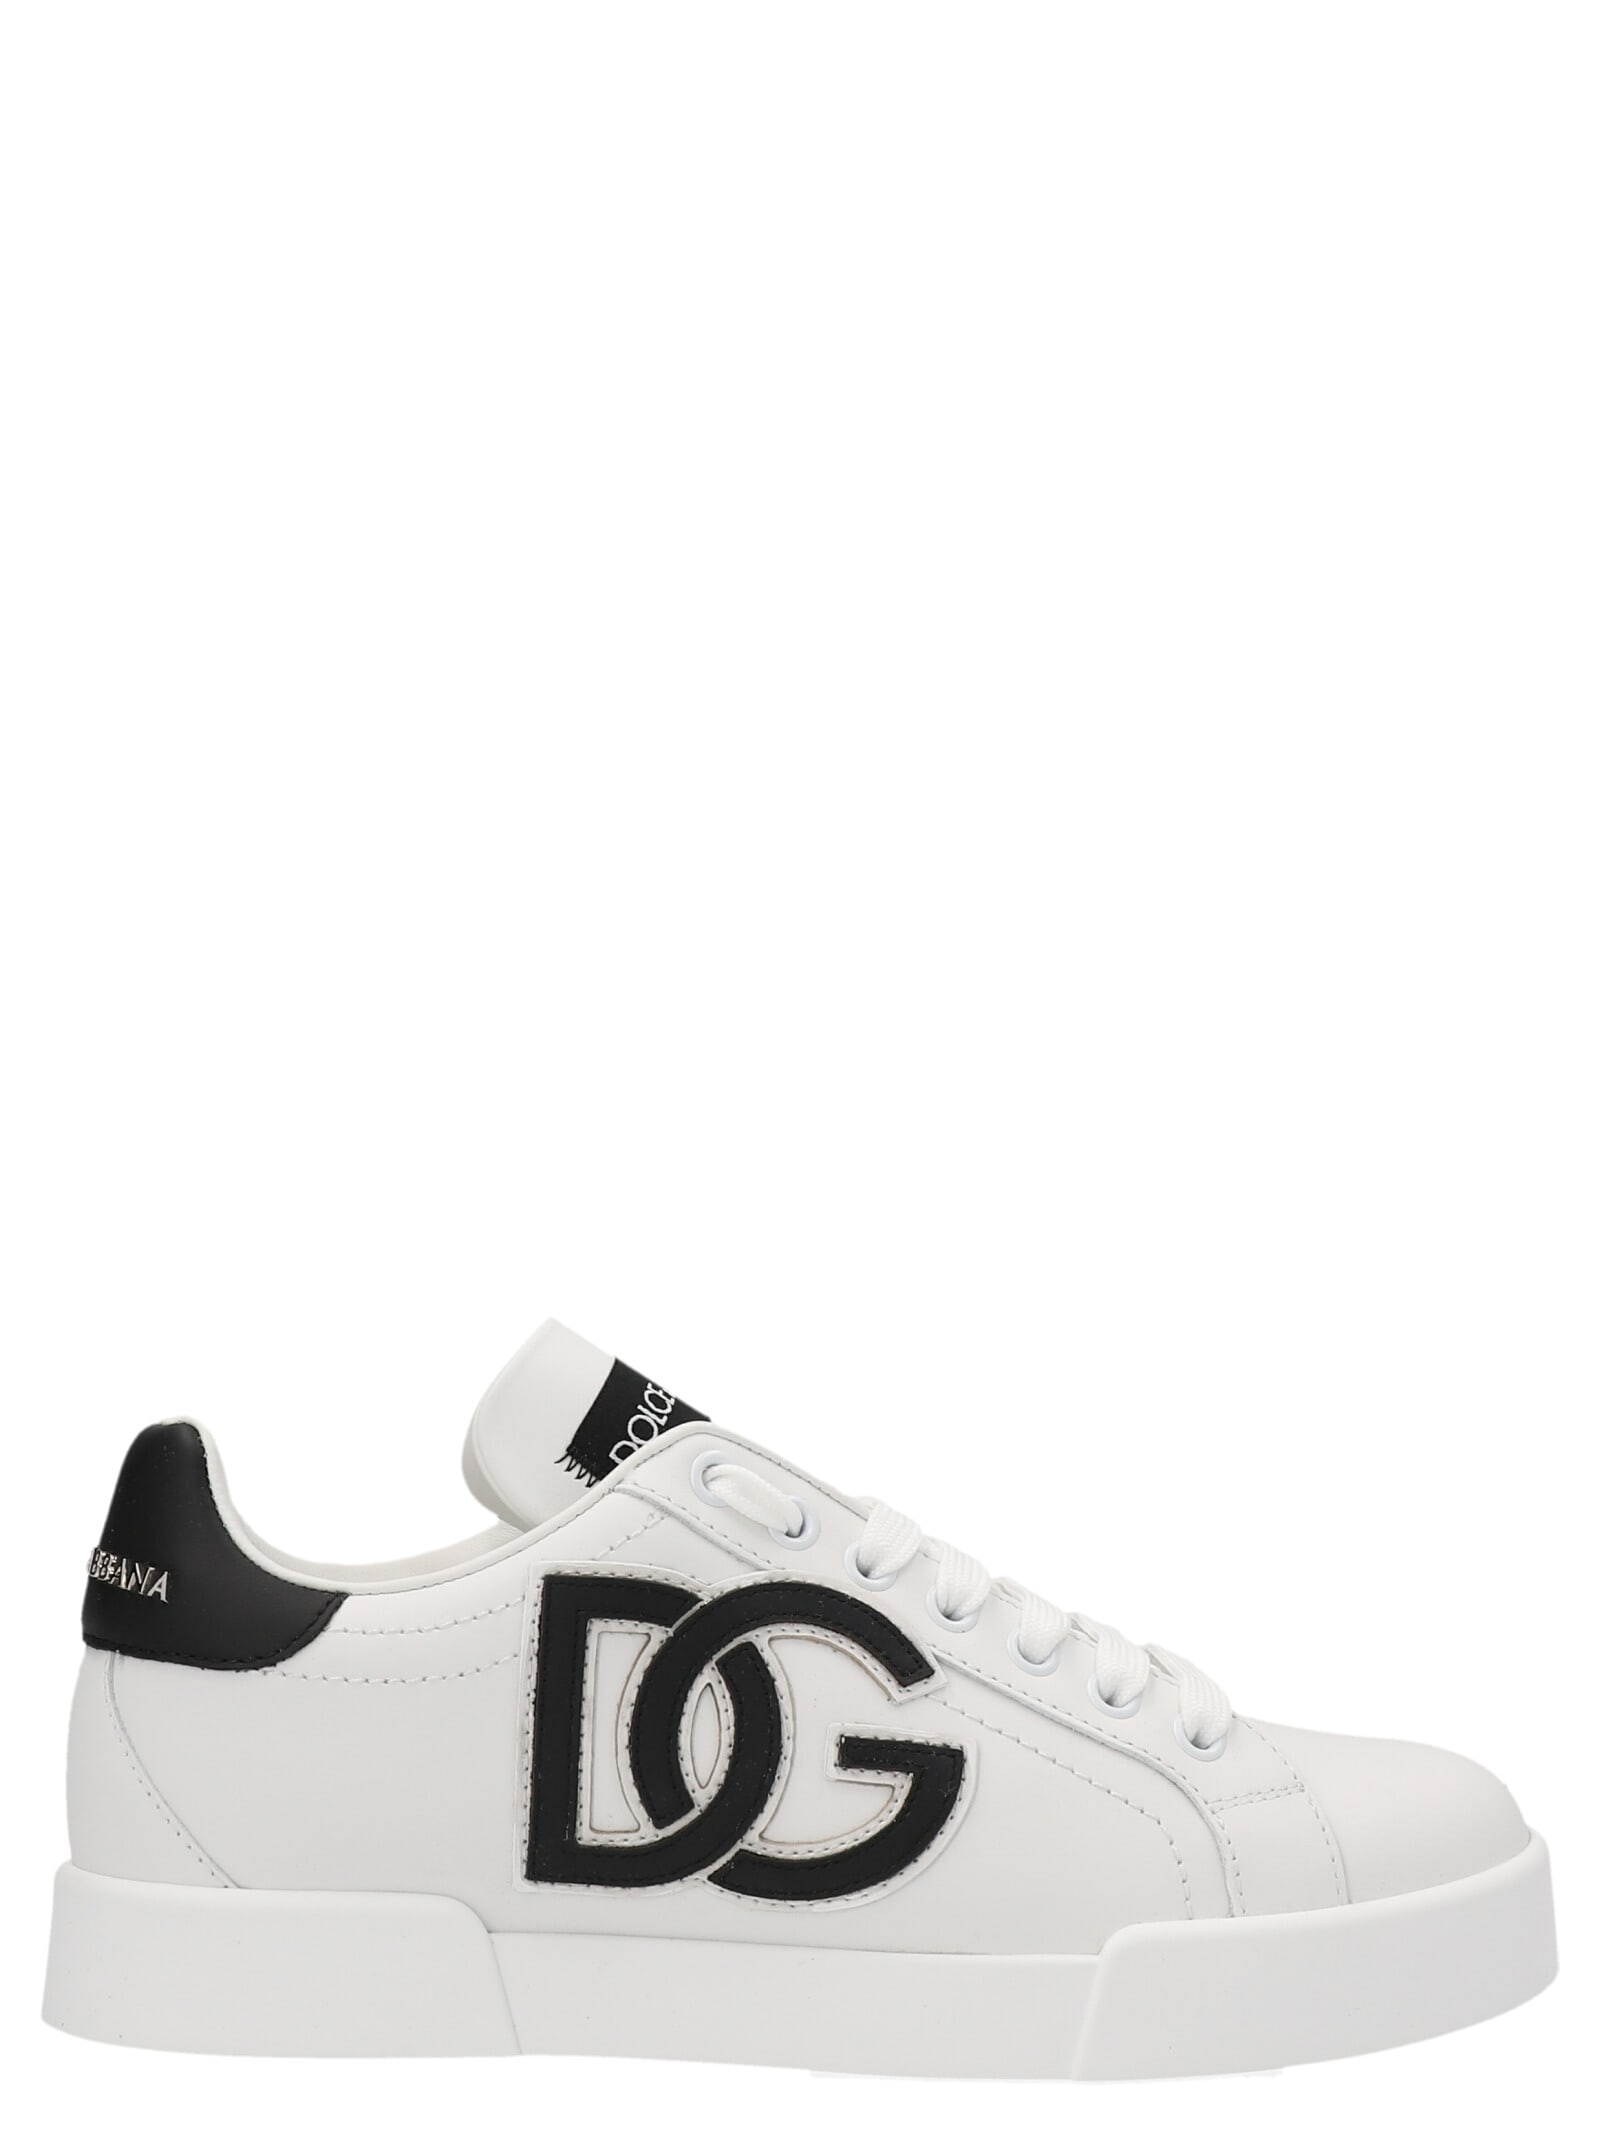 Dolce & Gabbana portofino Sneakers